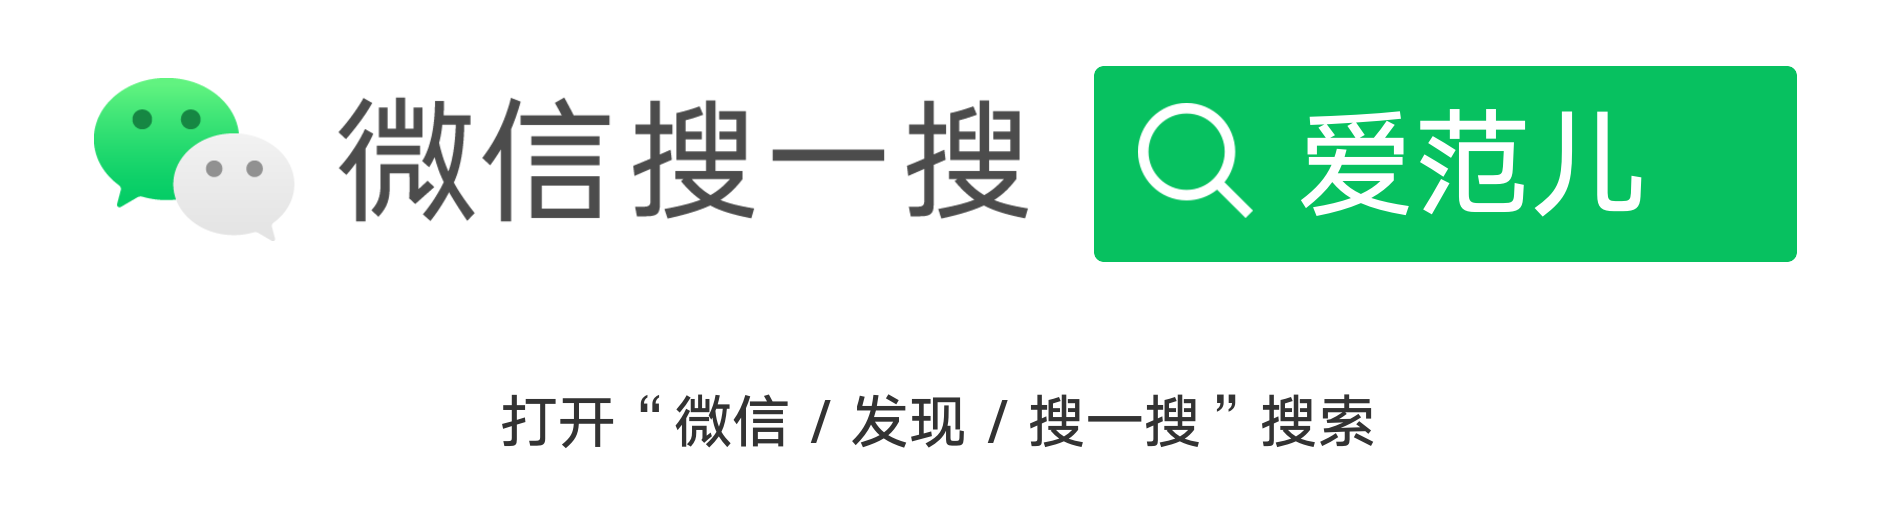 logo - Un’app che non è umana tranne te, un’isola che sovverte ogni forma di interazione sociale｜Intervista al CEO di Xiaobing Li Di